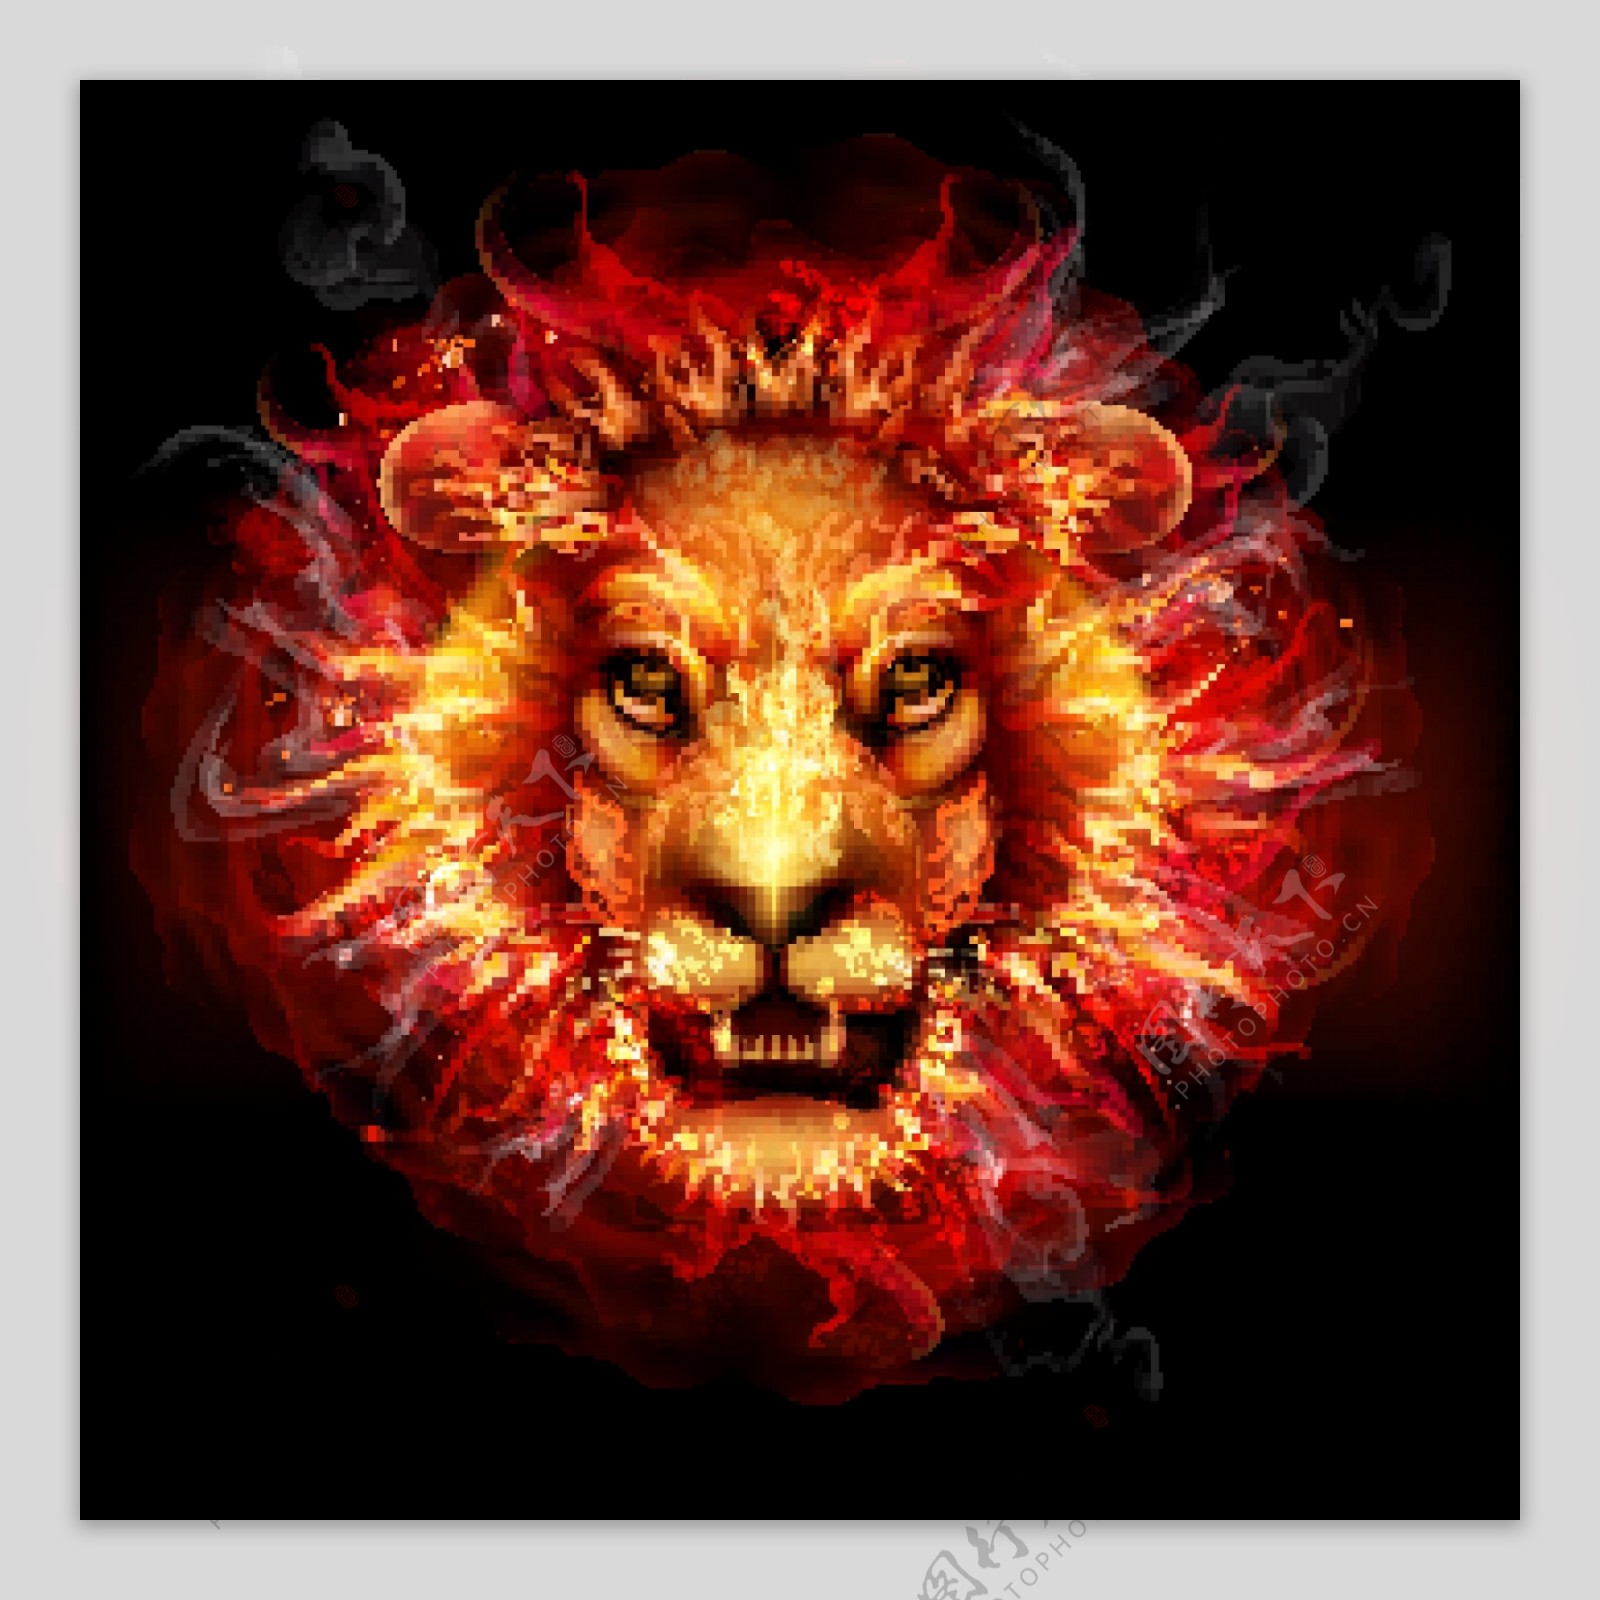 燃烧的火焰雄狮头图片